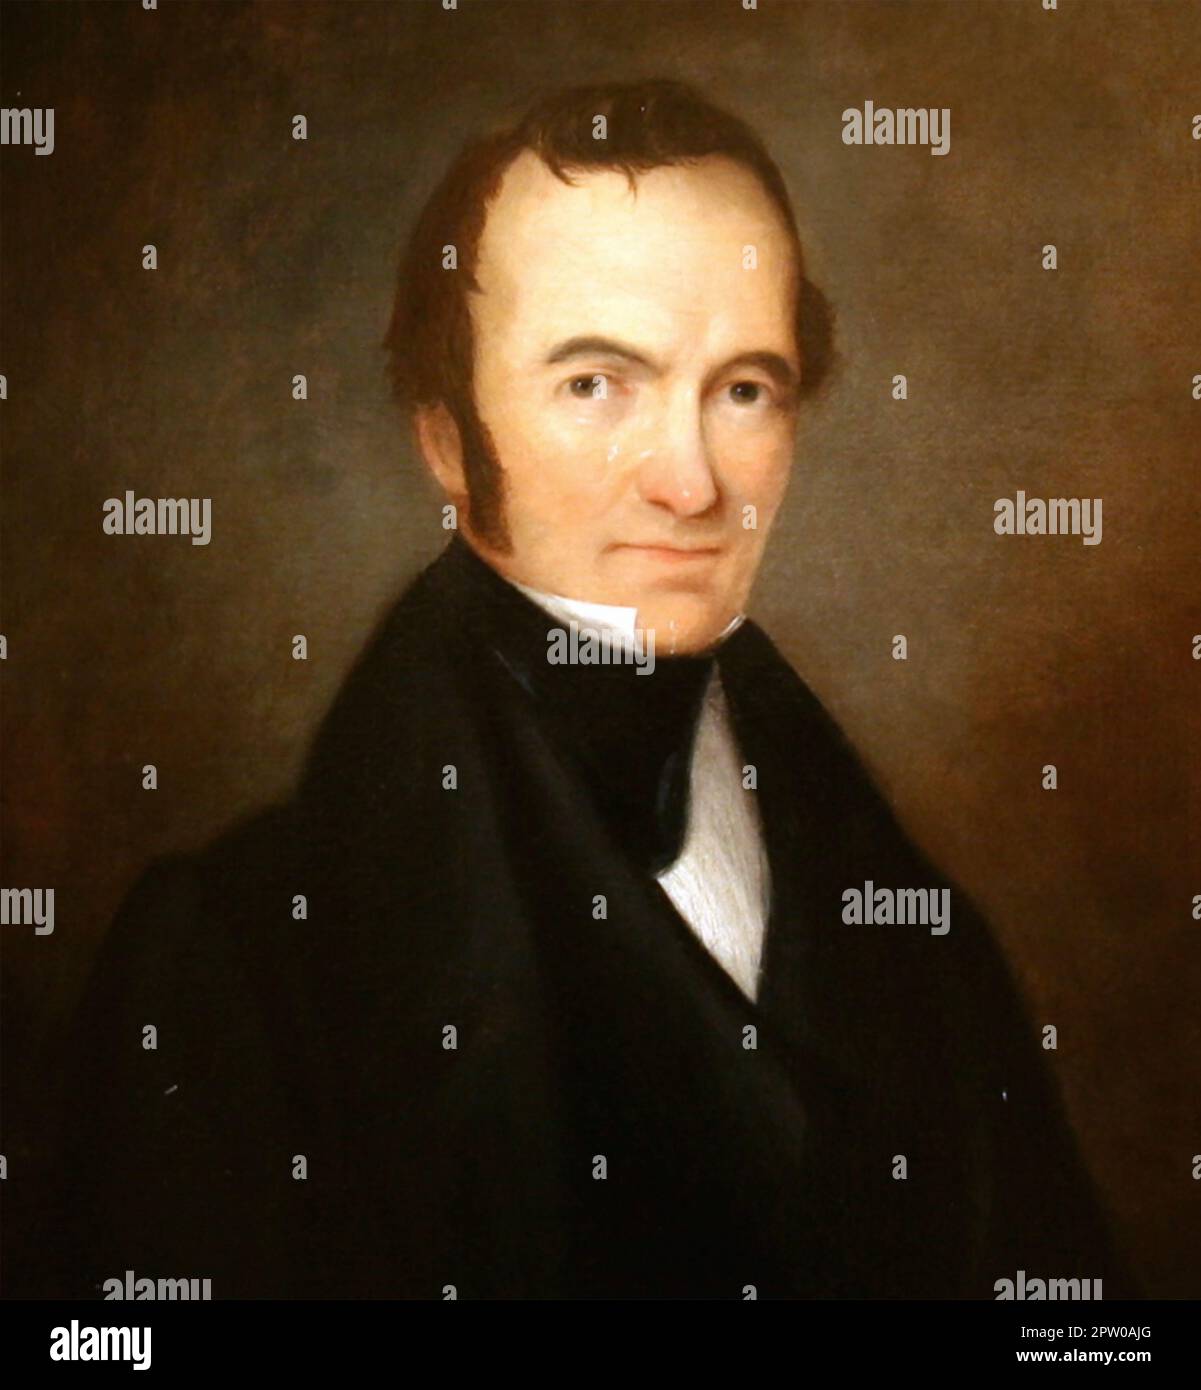 STEPHEN F. AUSTIN (1793-1836), einer der Gründerväter von Texas. Das Porträt wurde 1840 nach seinem Tod gemalt. Stockfoto